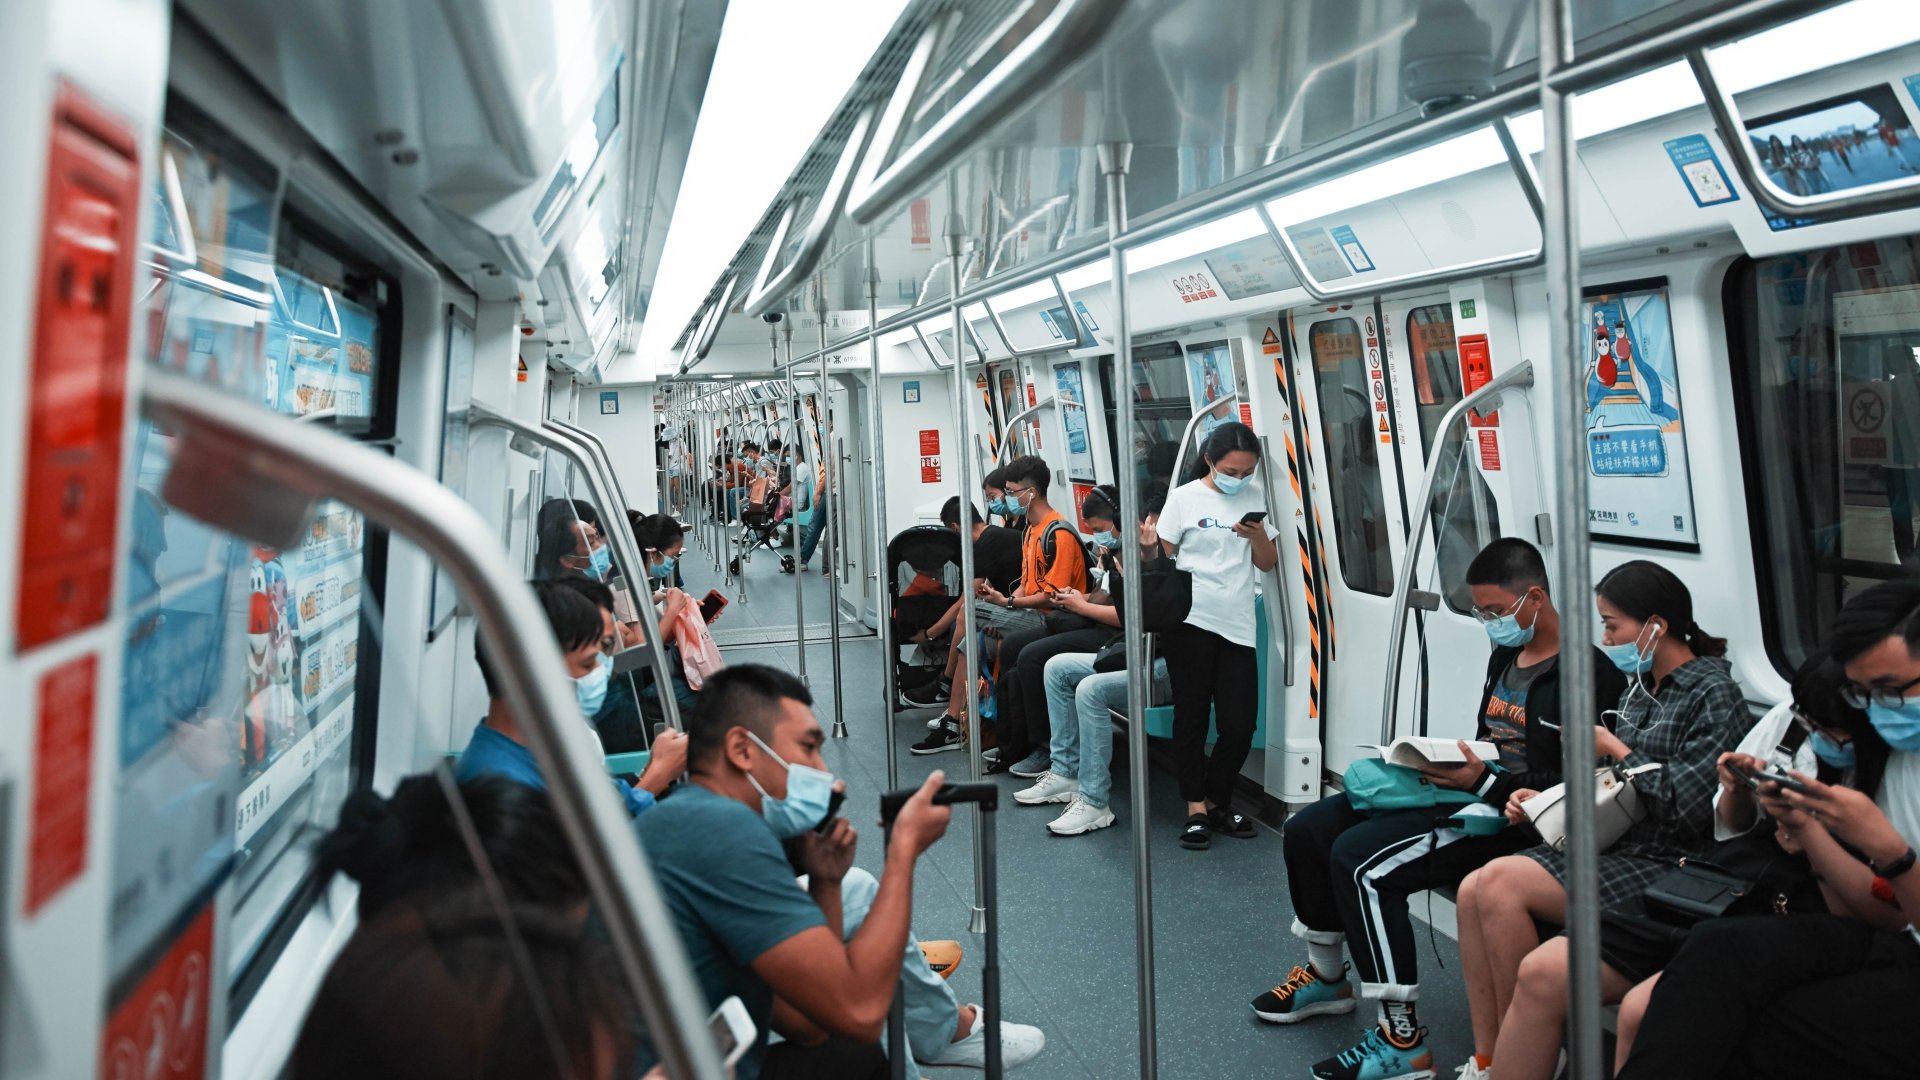 Utasok a metrón Kínában